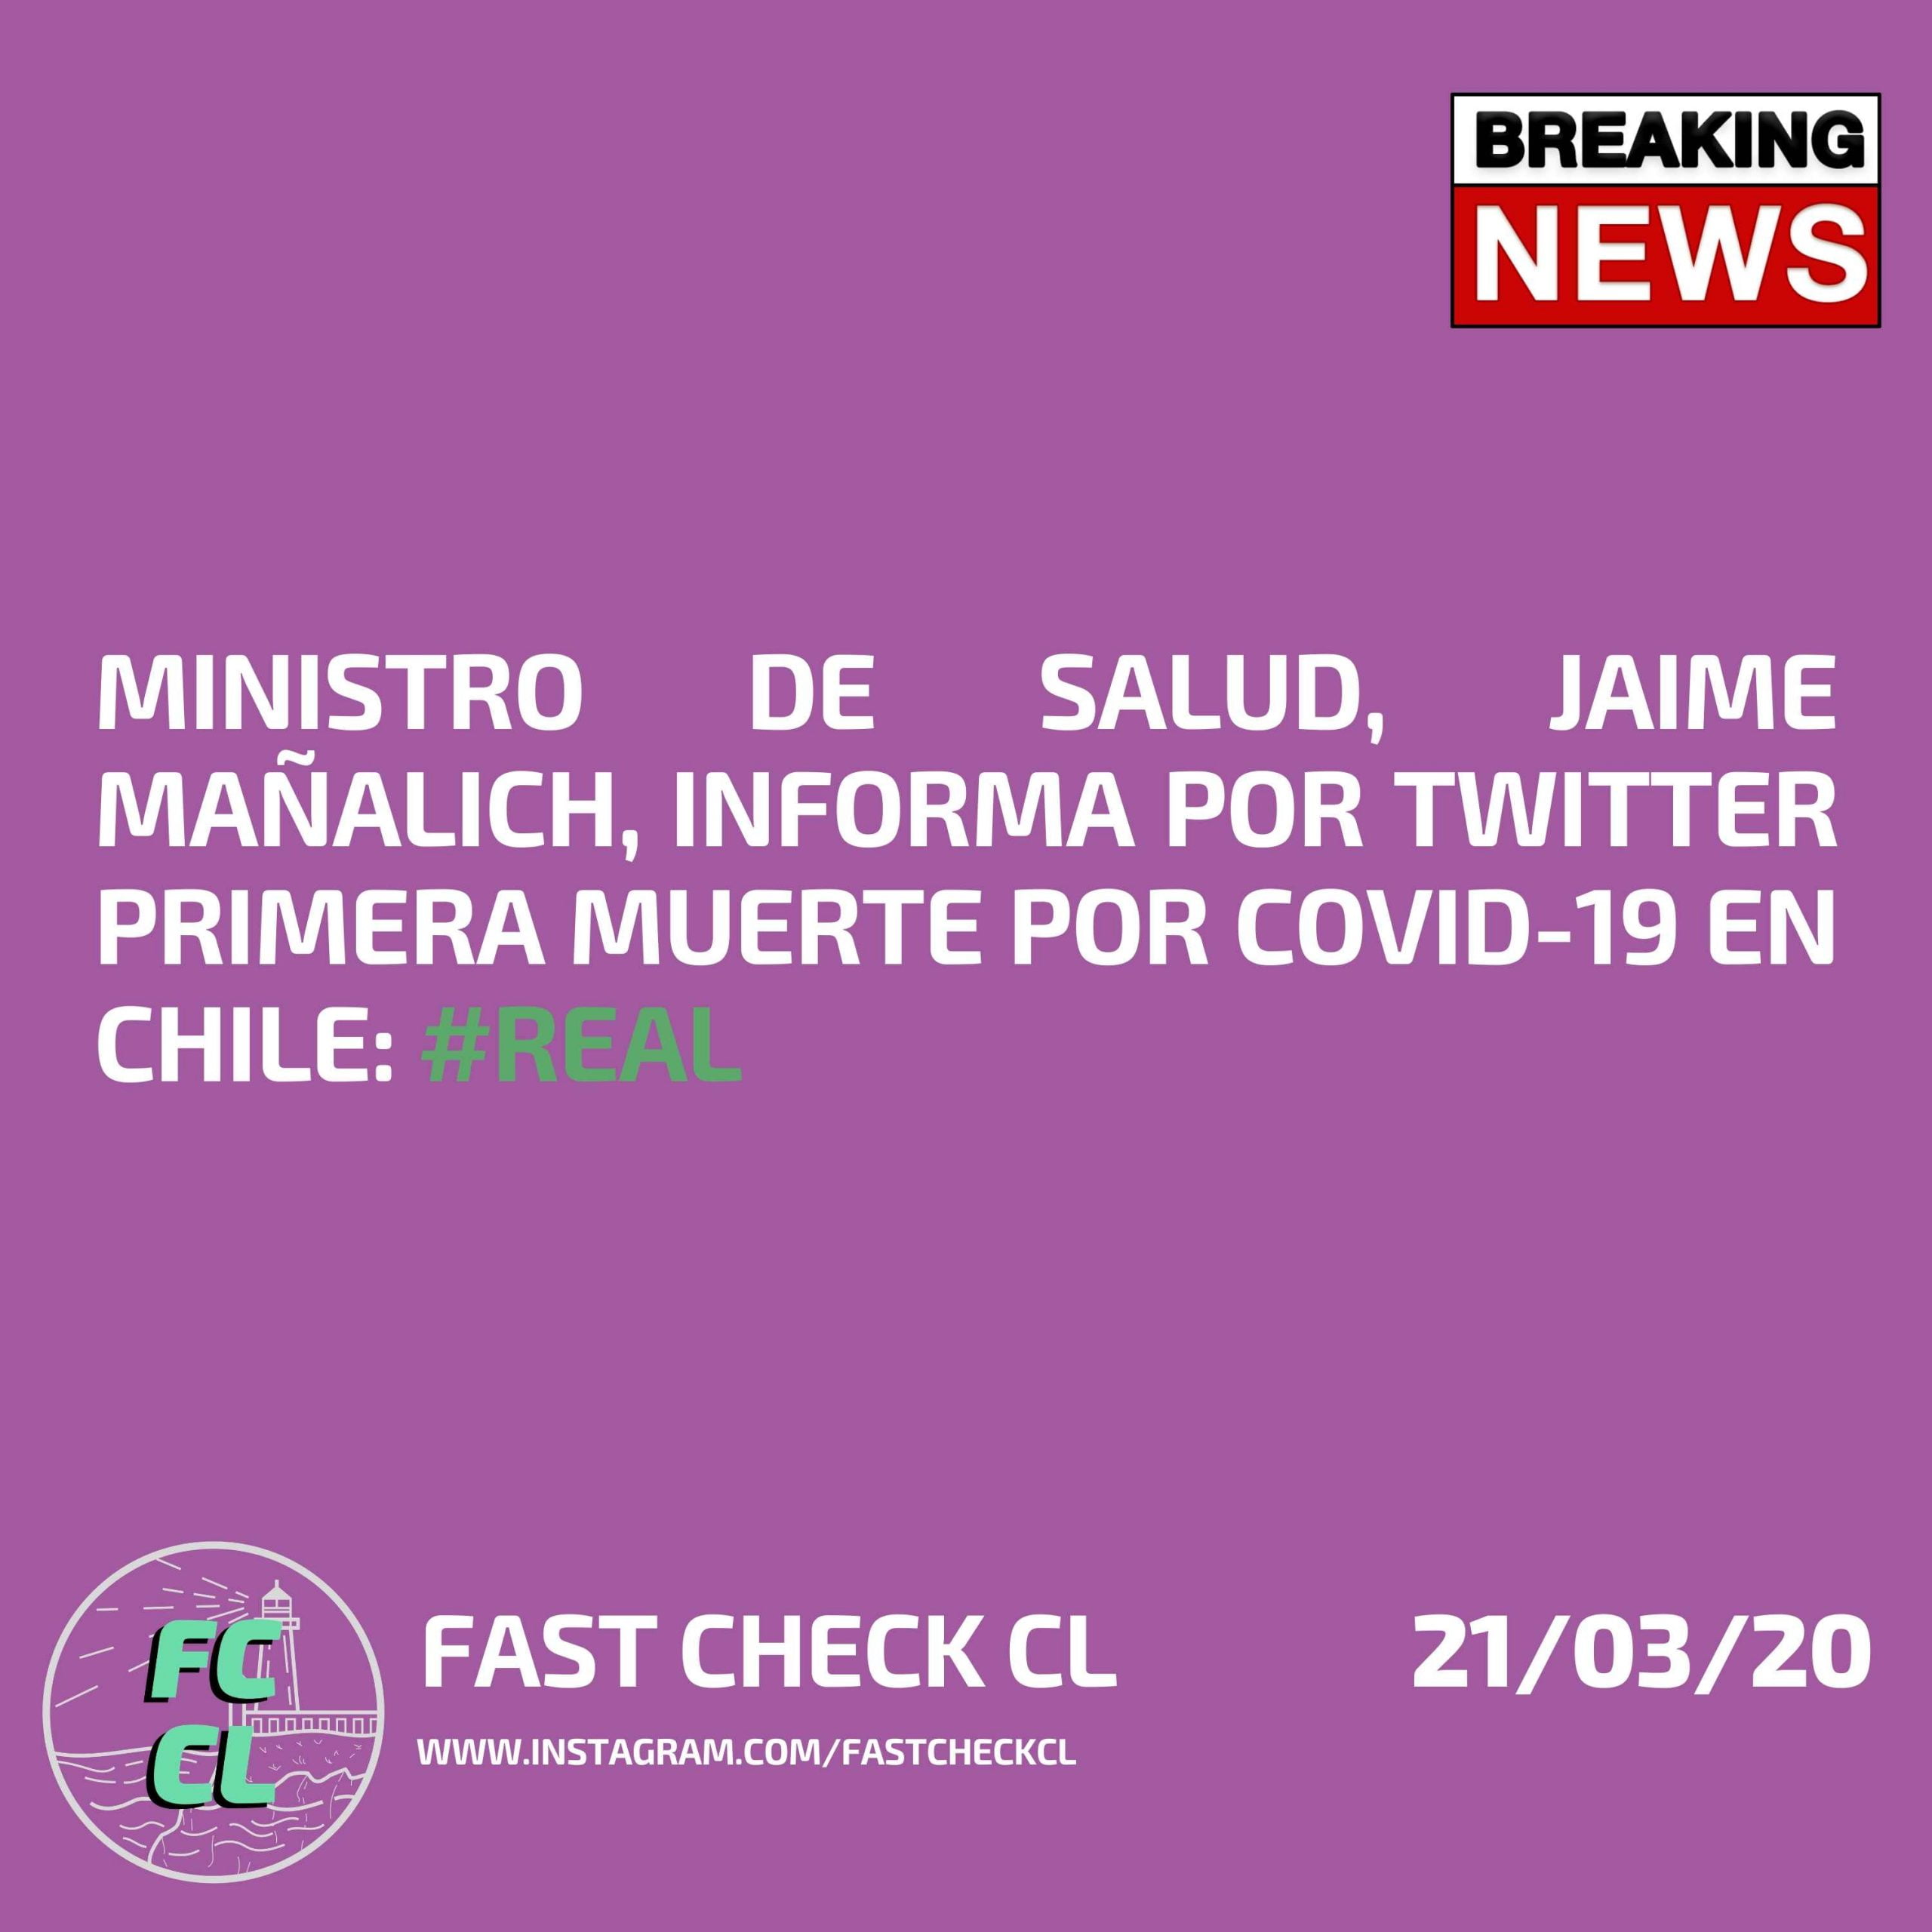 You are currently viewing Ministro de Salud, Jaime Mañalich, informa por Twitter primera muerte por Covid-19 en Chile: #Real